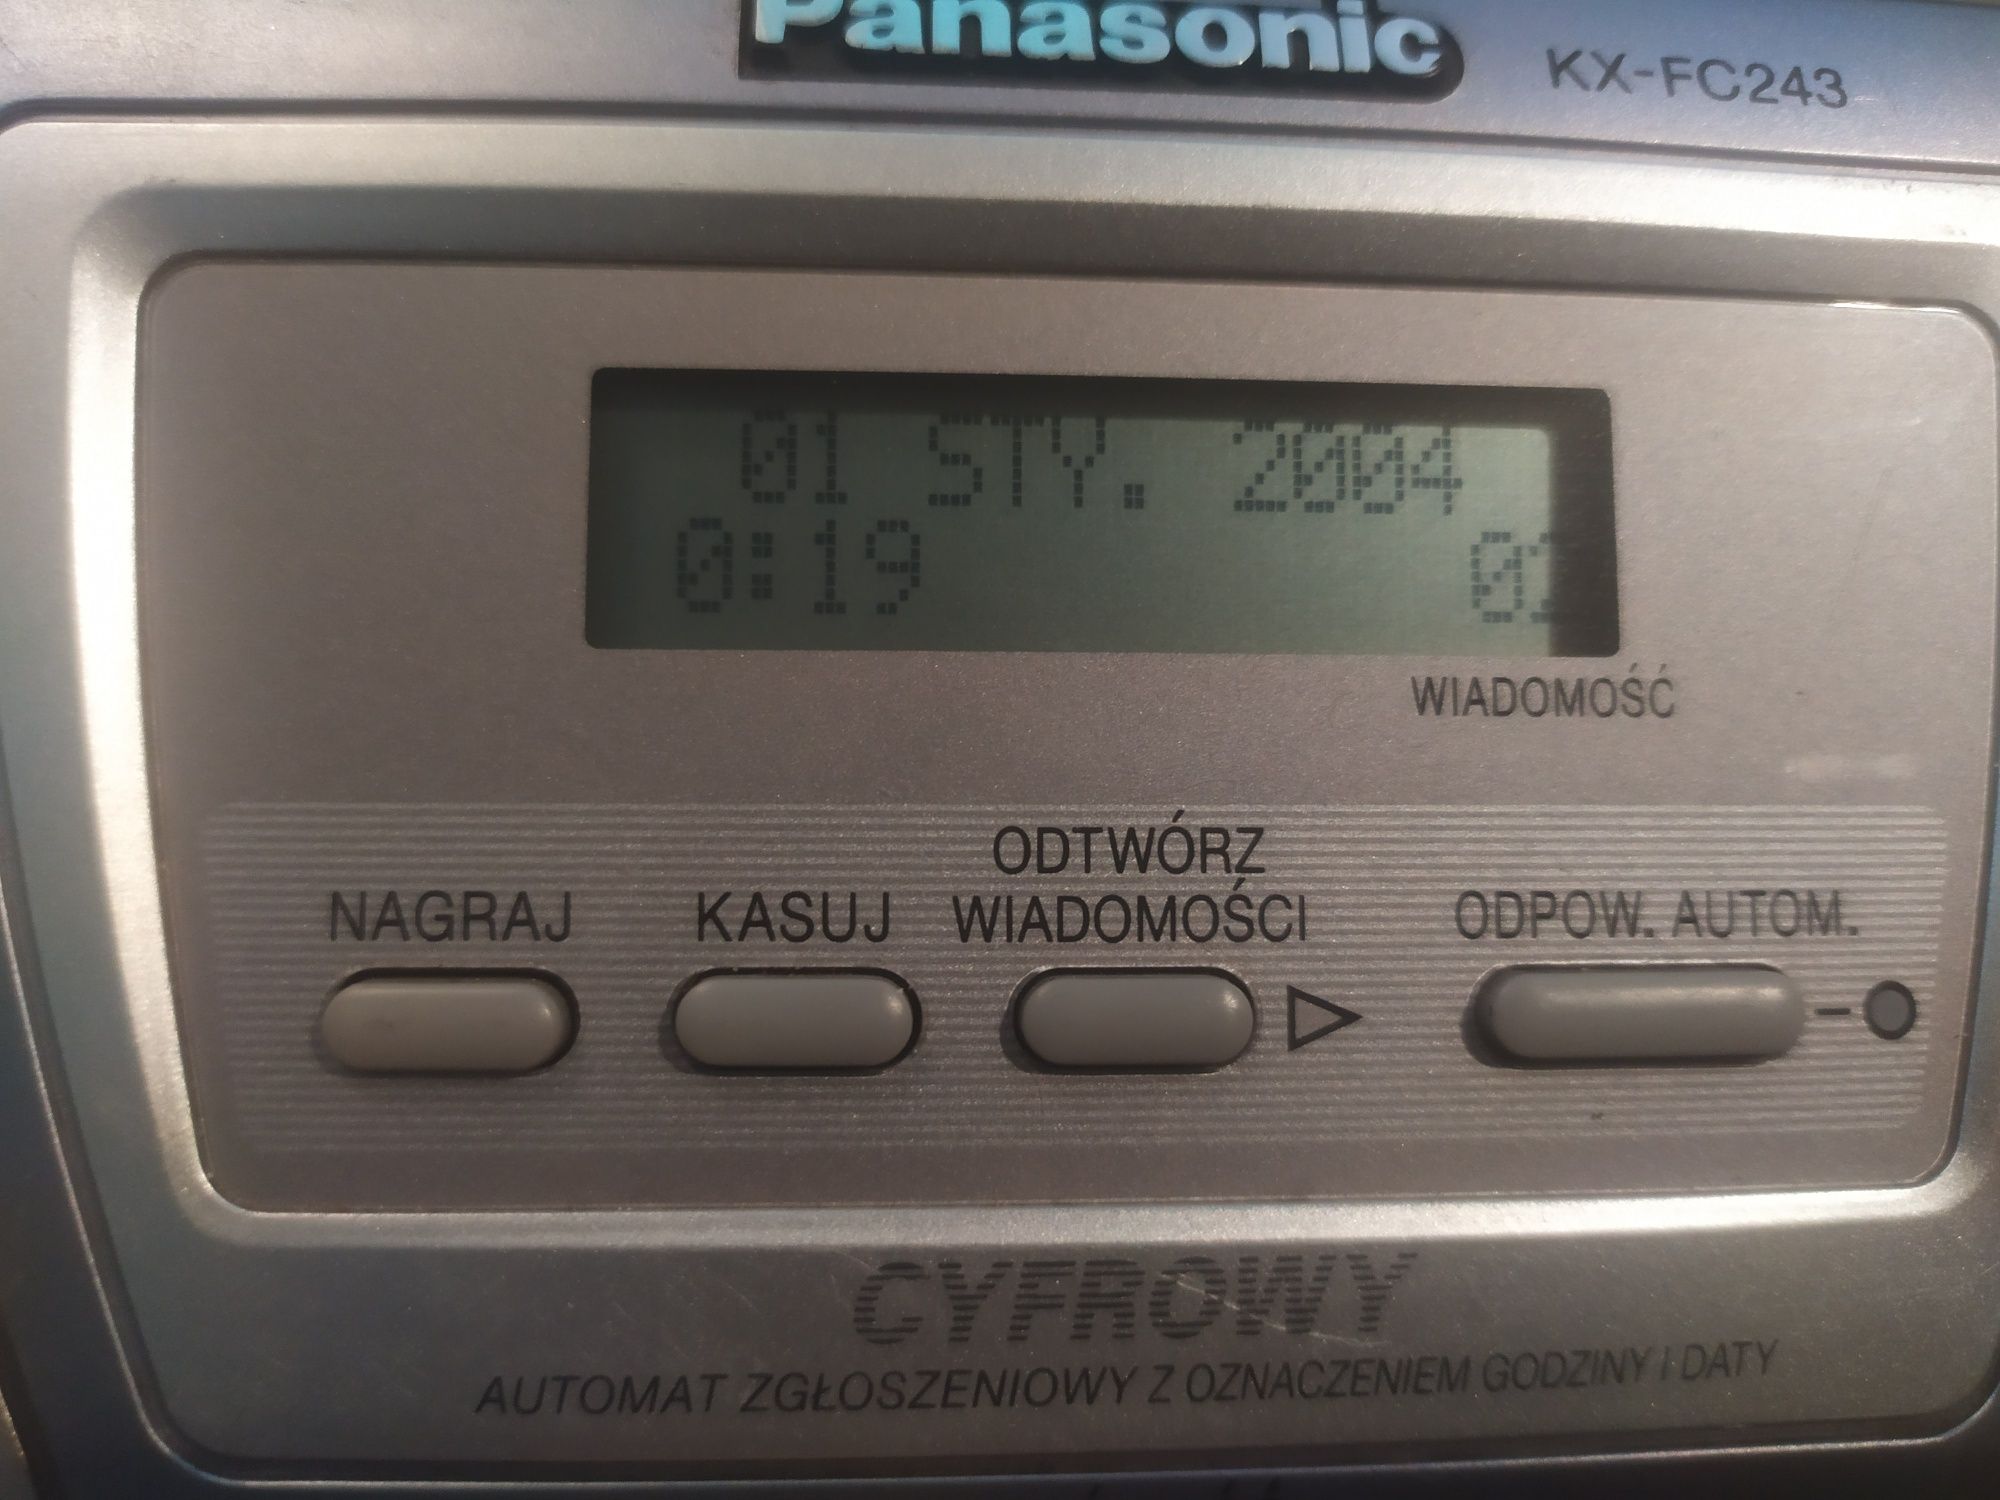 Telefaks Panasonic KX-FC243PD na zwykły papier A4 i funkcja kopiarki
t